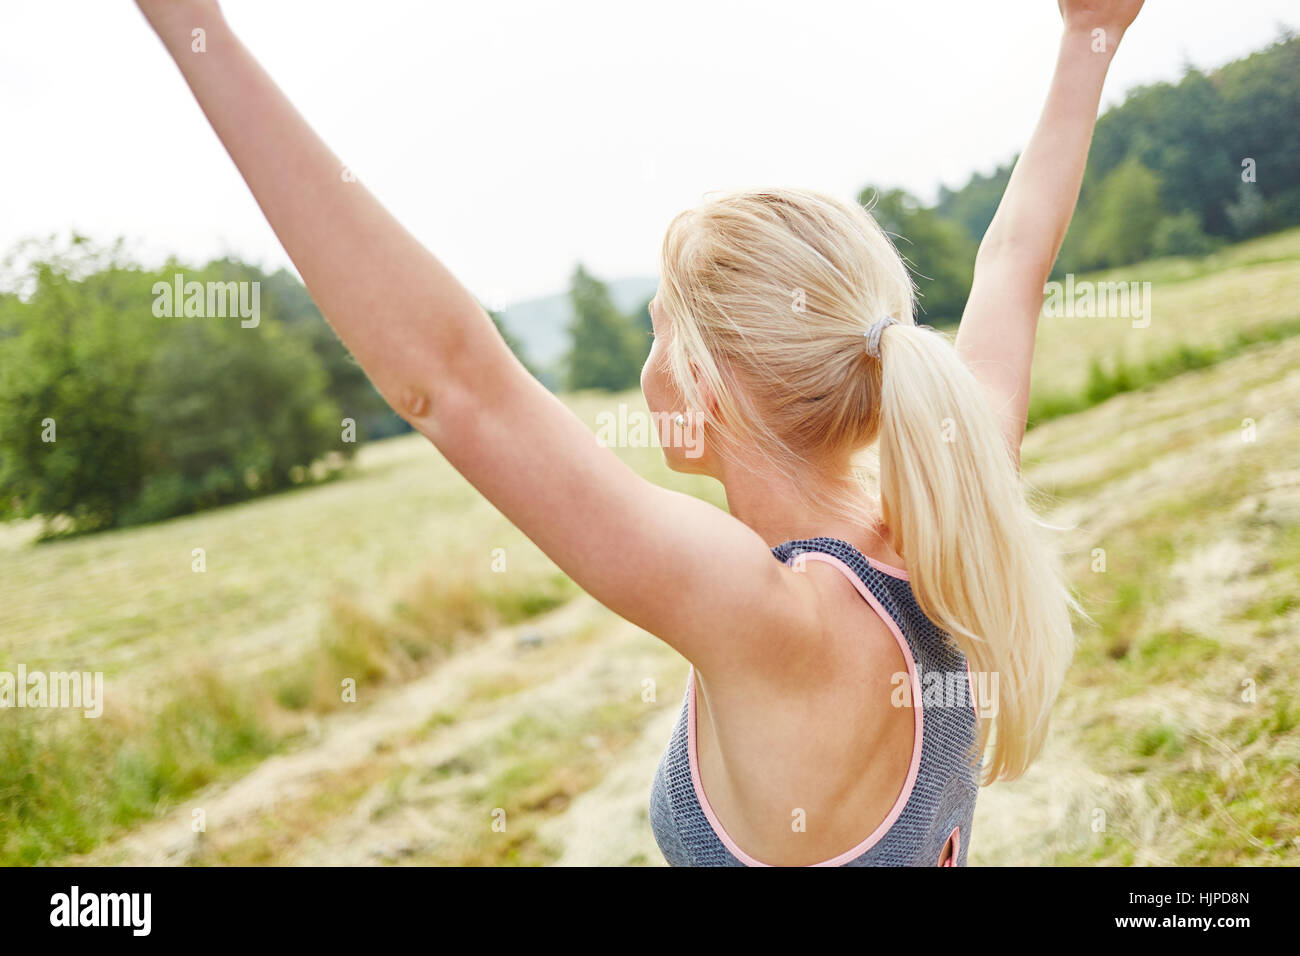 Mujer joven estirando los brazos en el aire como ejercicio de relajación wellness Foto de stock